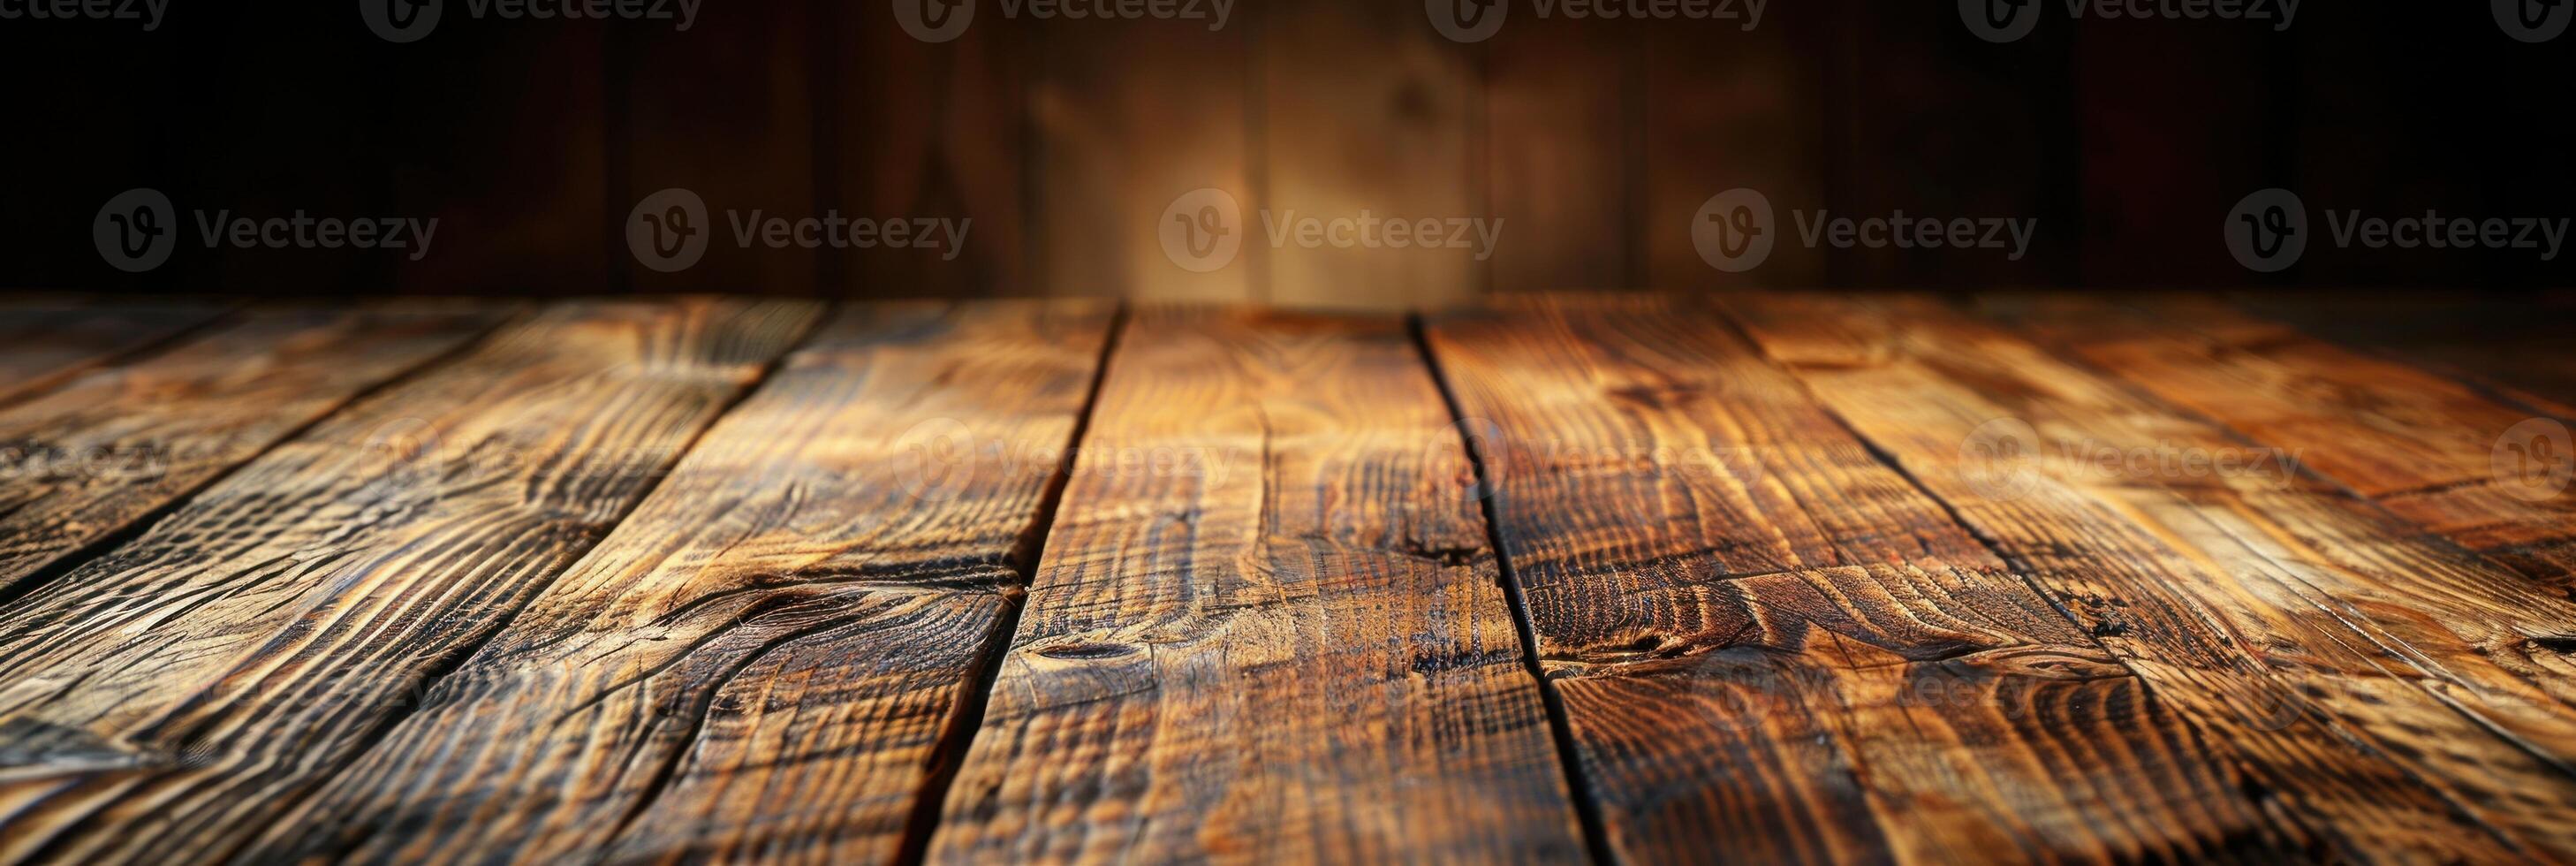 A wooden floor set against a dark background photo